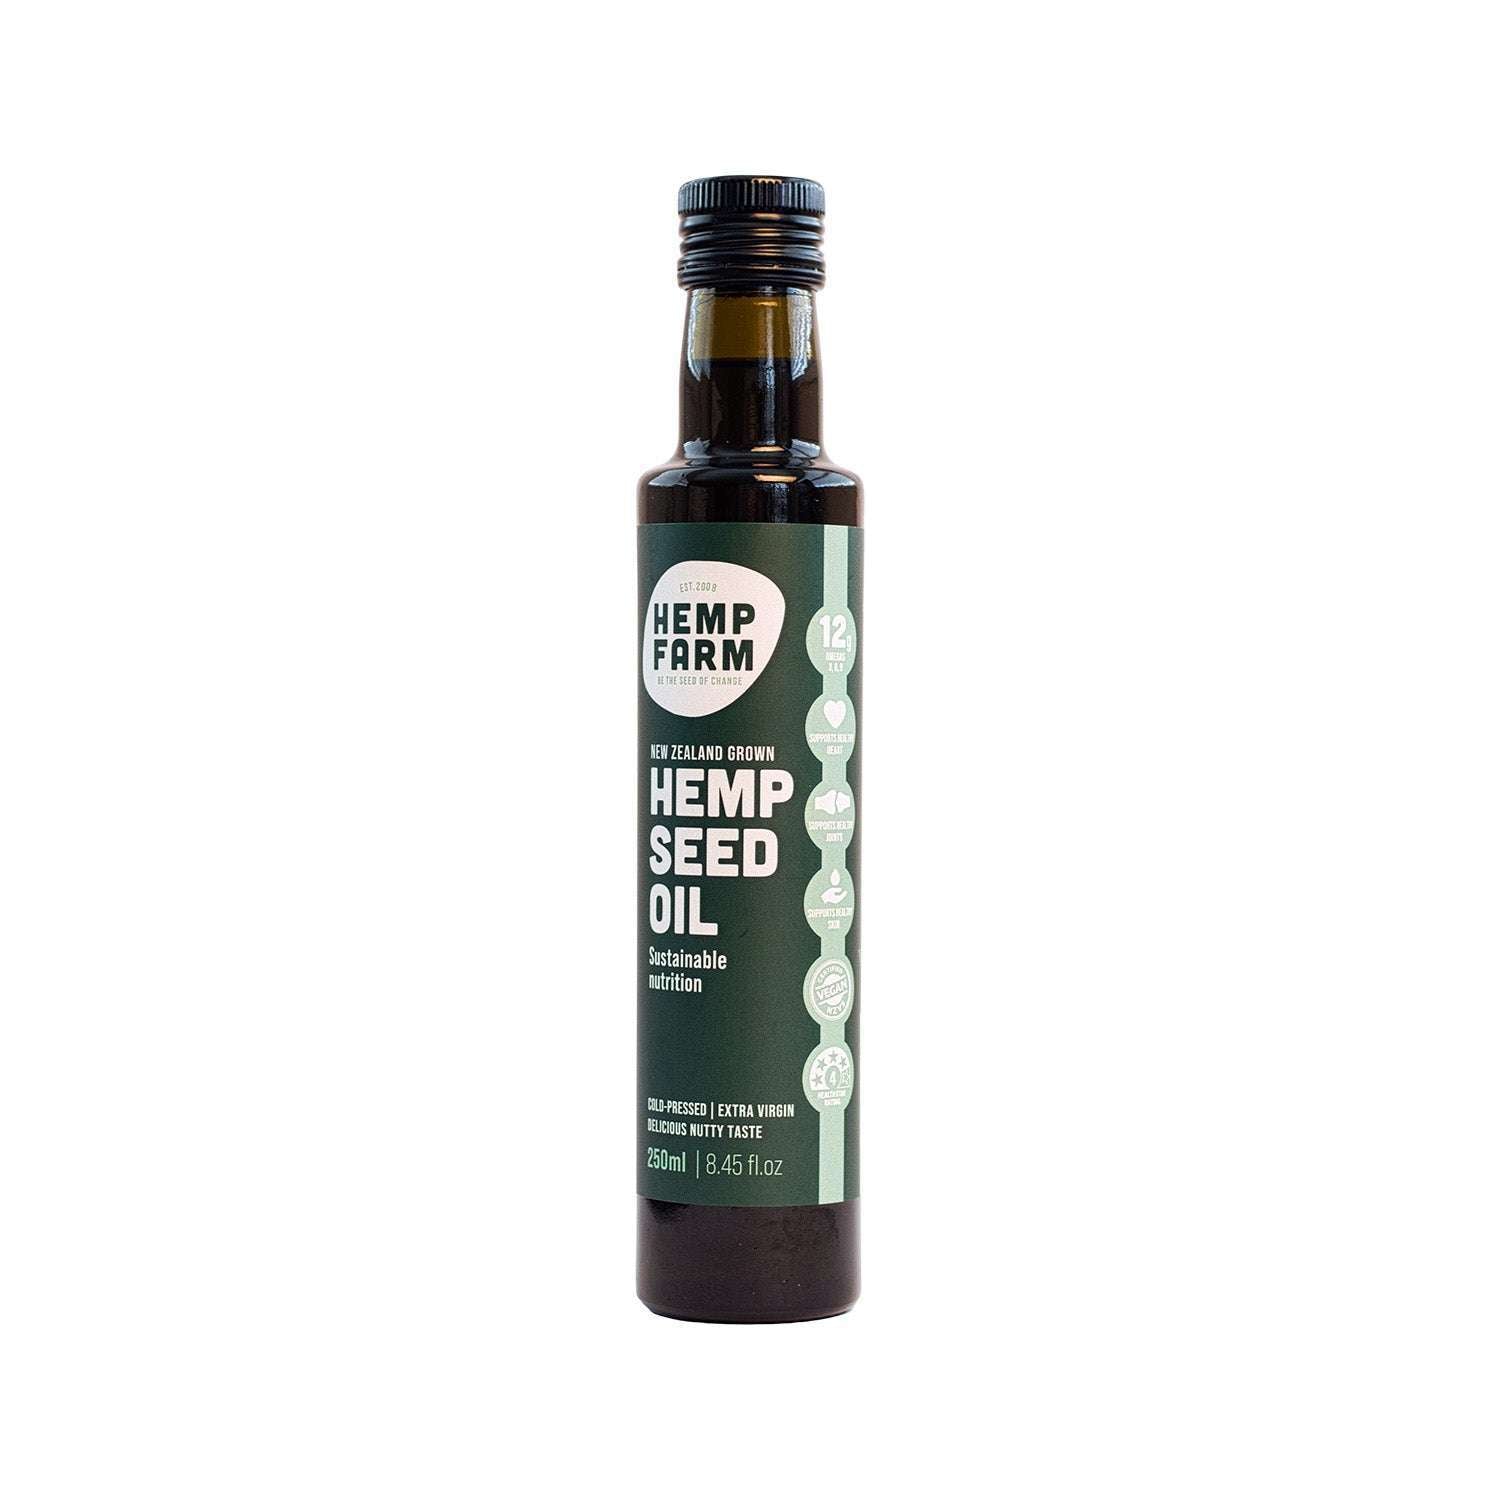 Hemp Farm NZ Grown Hemp Seed Oil 250ml